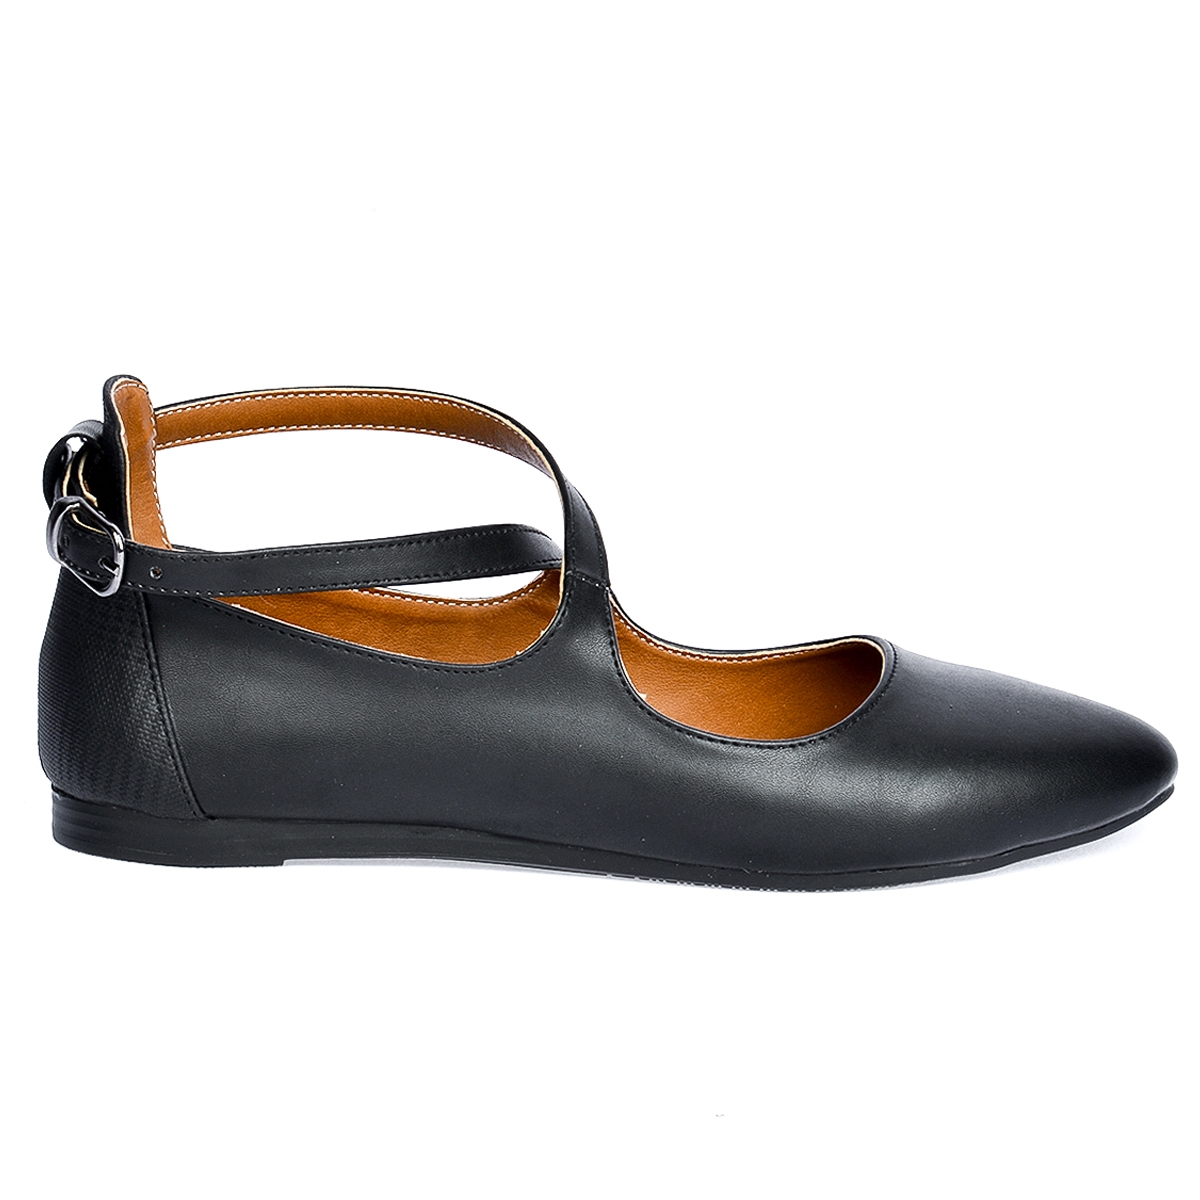 Flo 1920-203 Cilt Sandalet Kadın Babet Ayakkabı SİYAH. 1